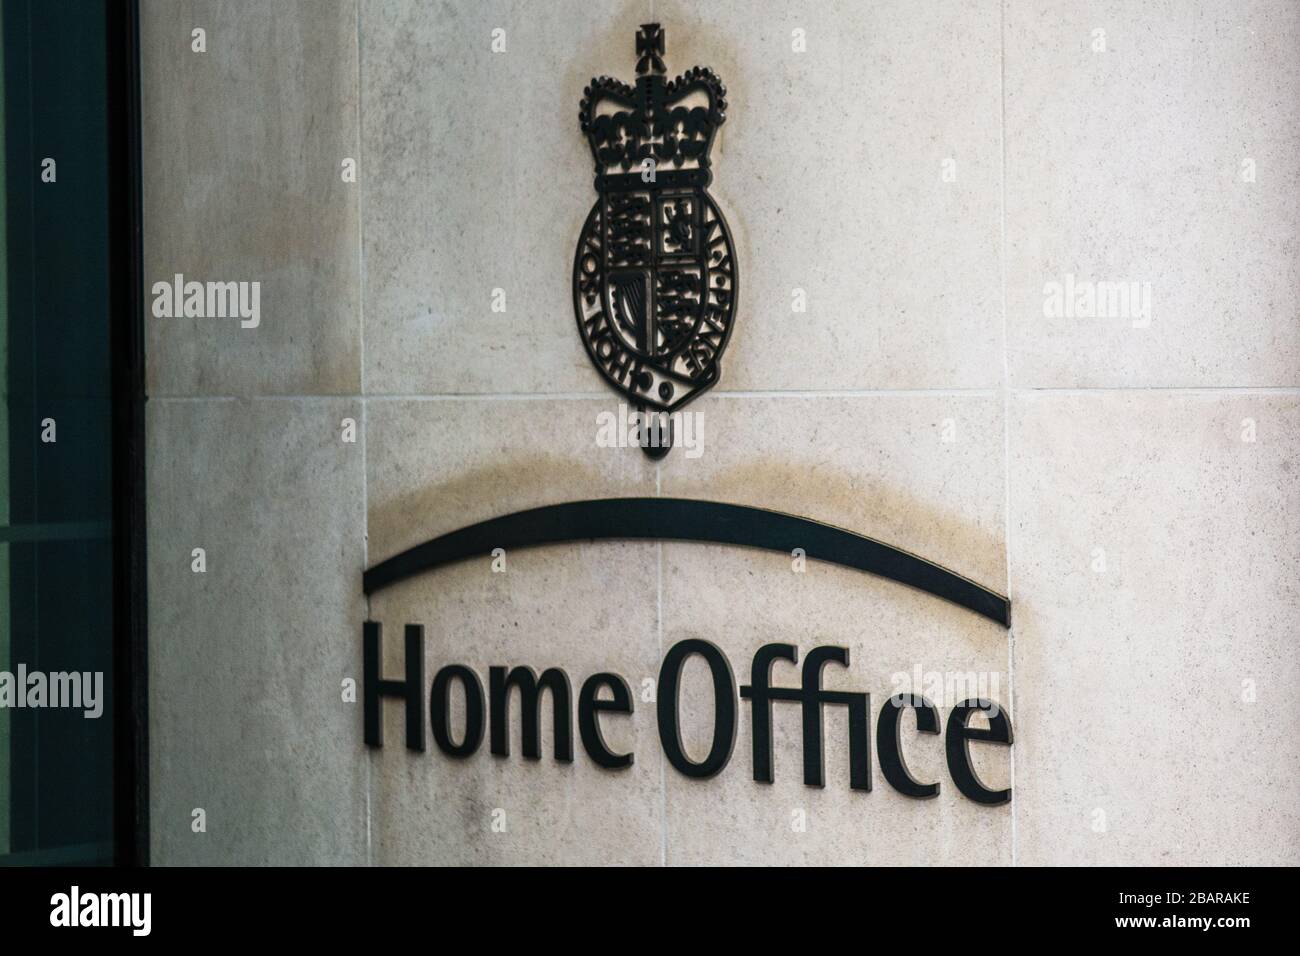 Logo Home Office e stemma presso l'ingresso principale - Dipartimento del governo britannico a Westminster Foto Stock